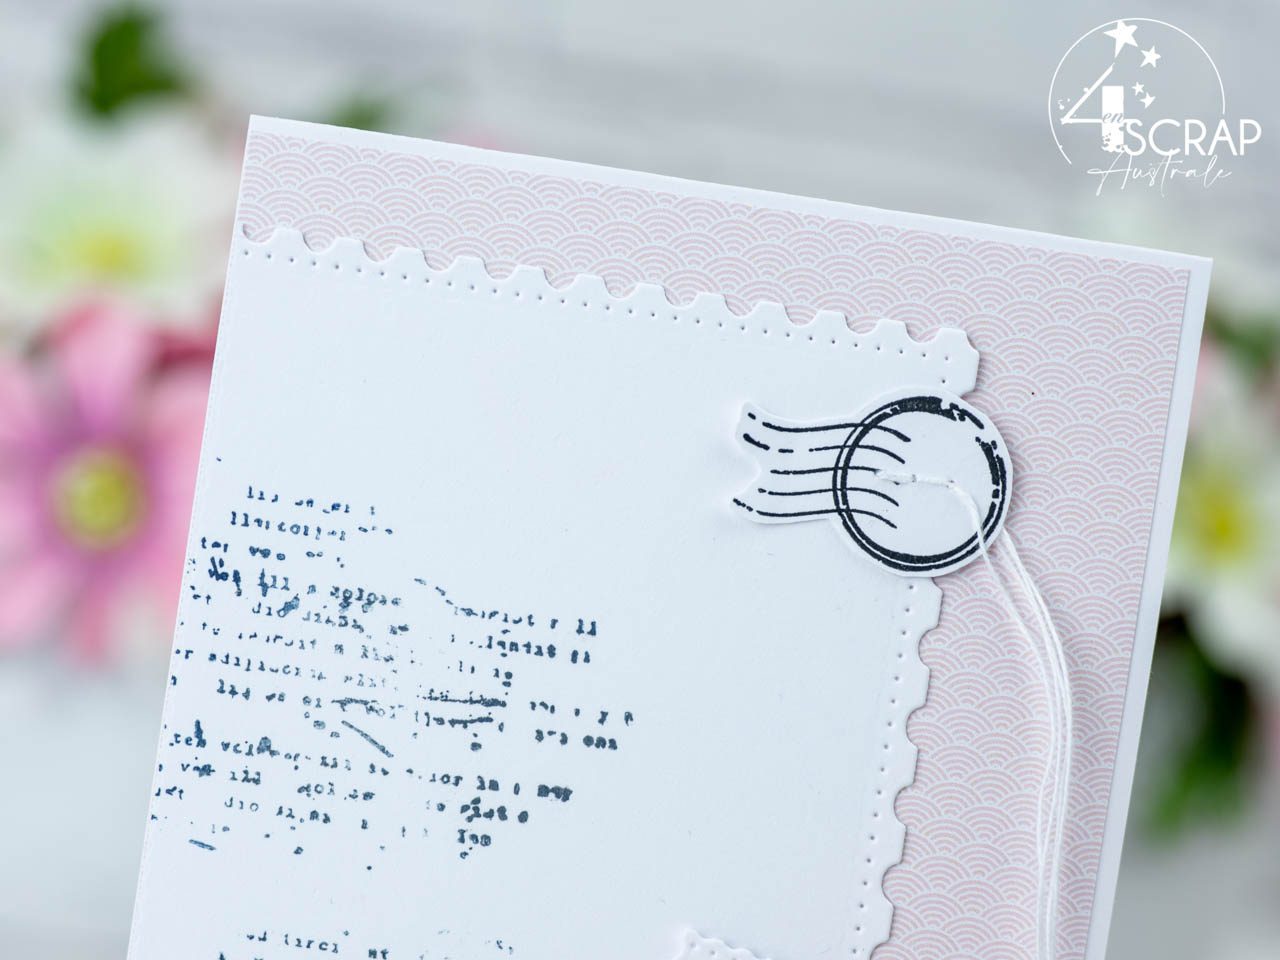 Création d'une carte d'amitié avec découpes timbres, petits coeurs et feuillages.